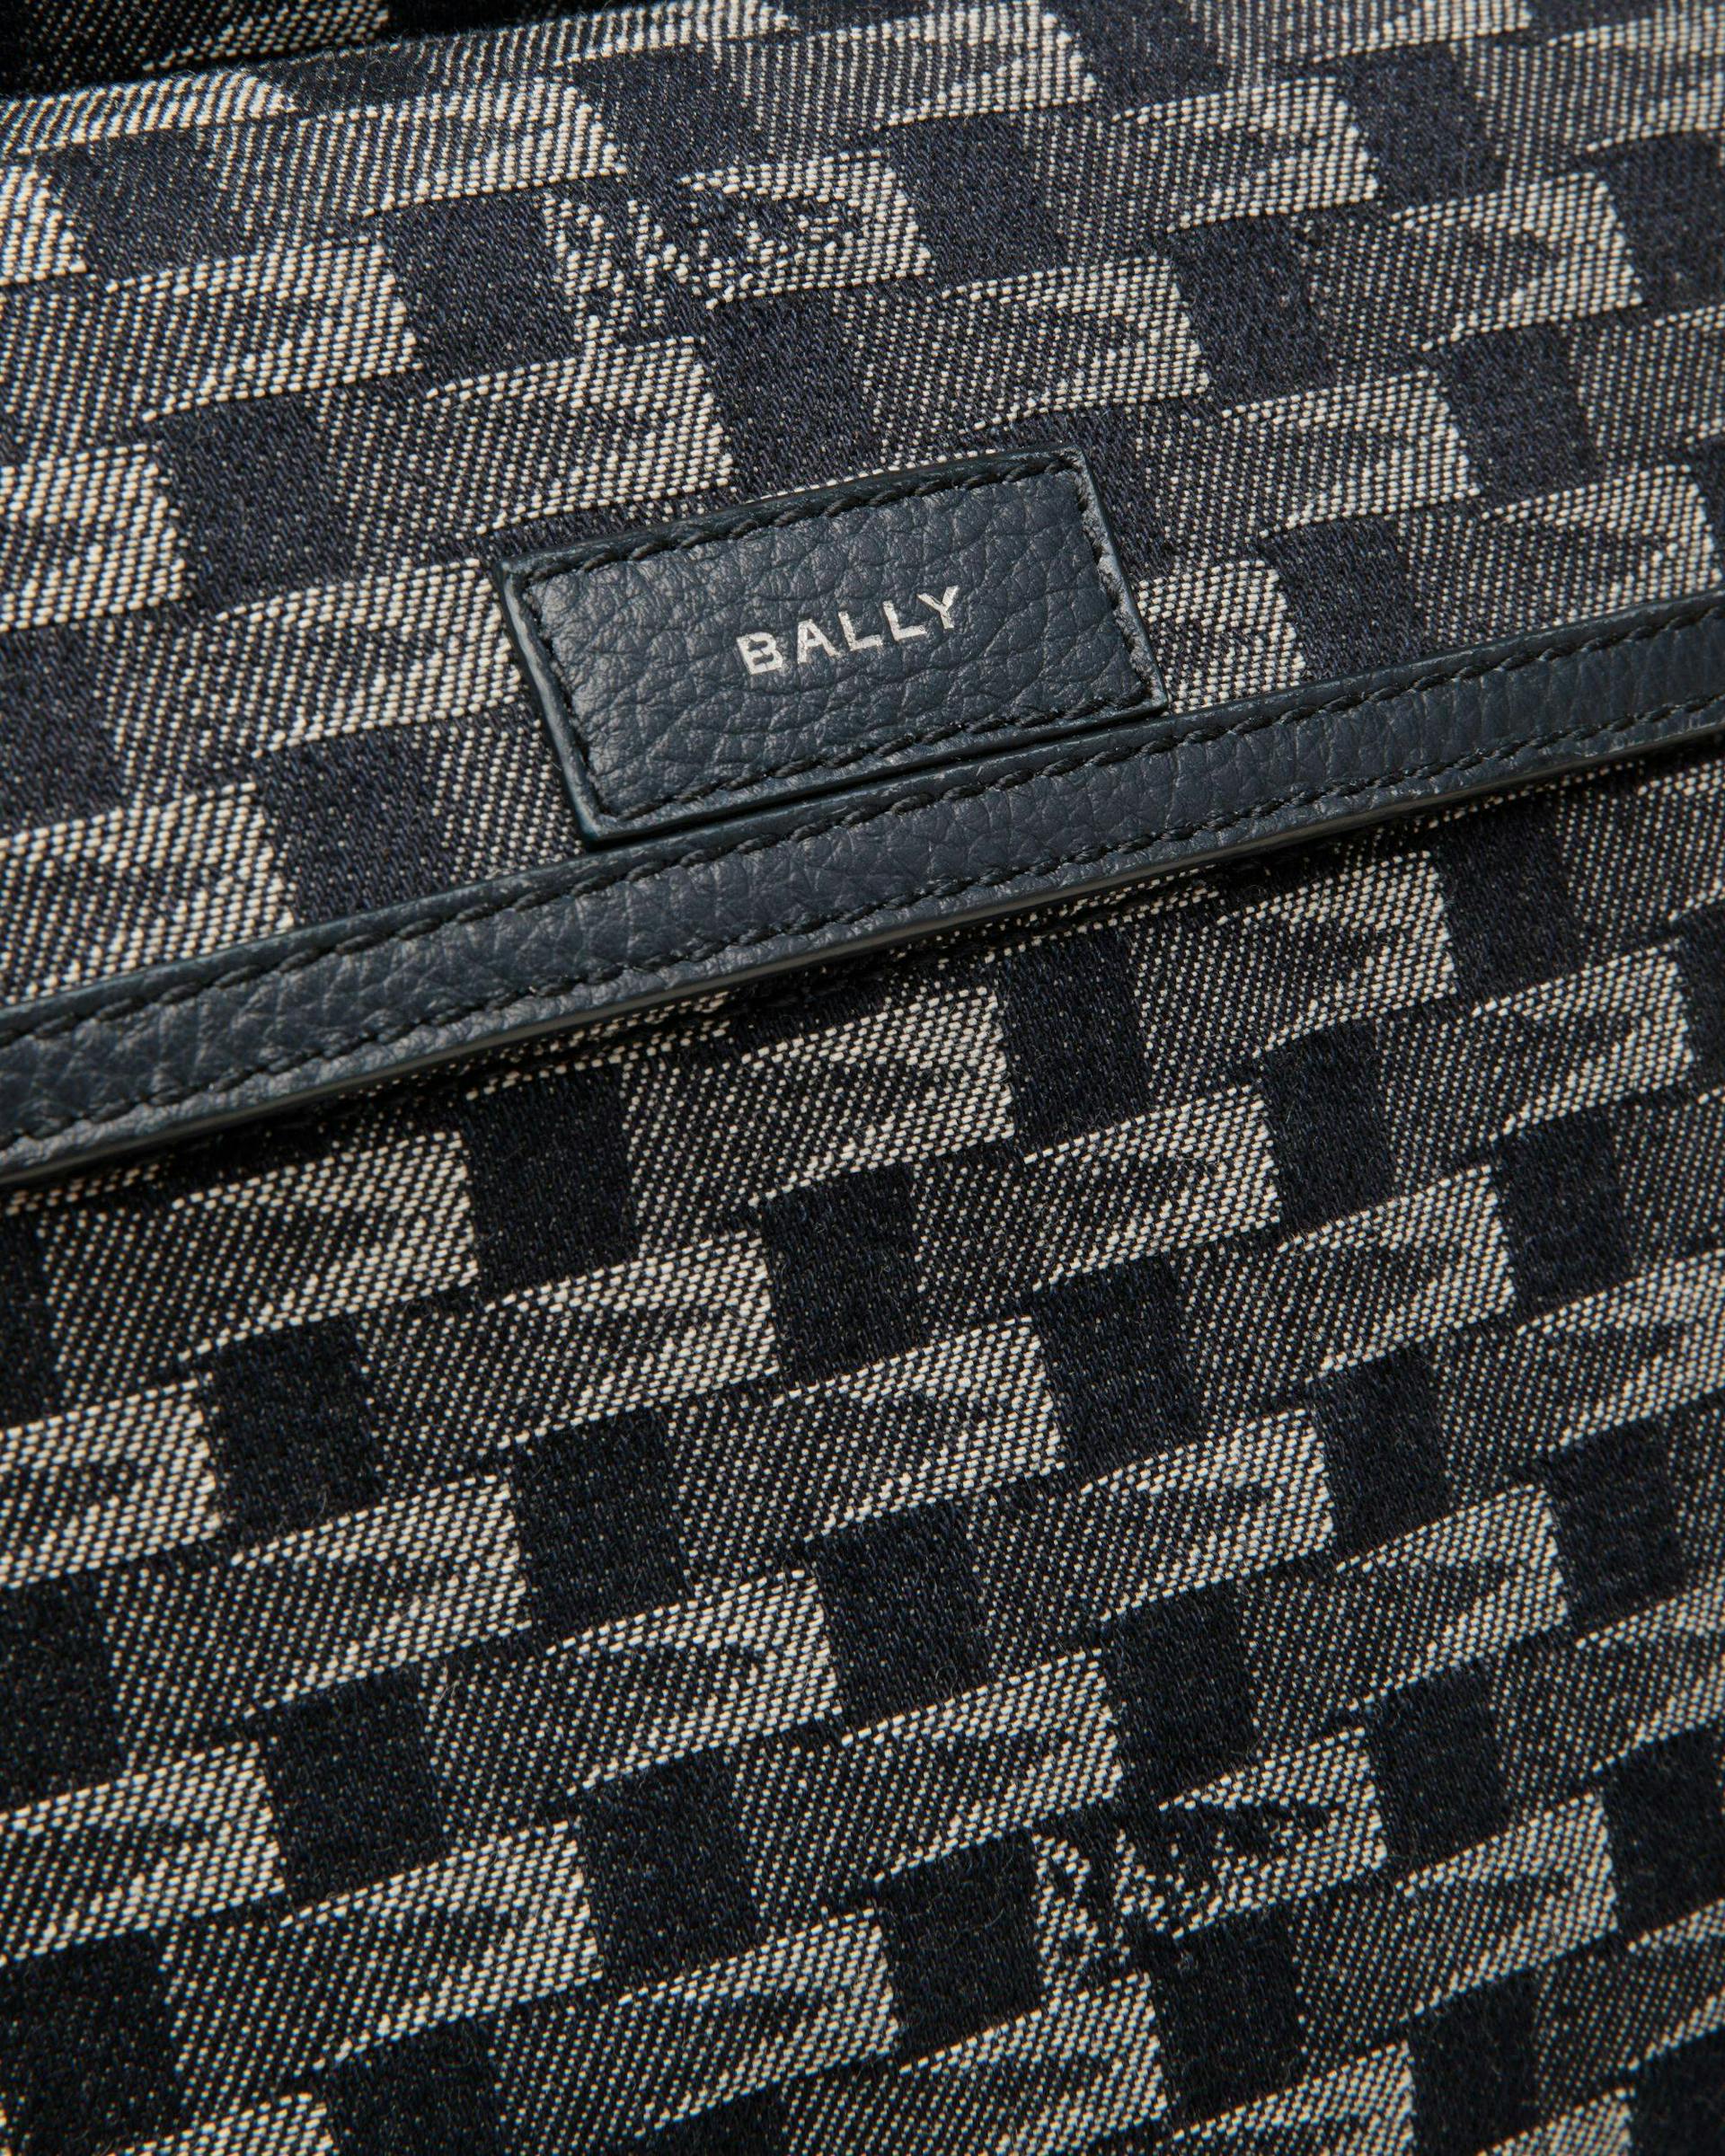 Men's Pennant Backpack in Denim | Bally | Still Life Detail